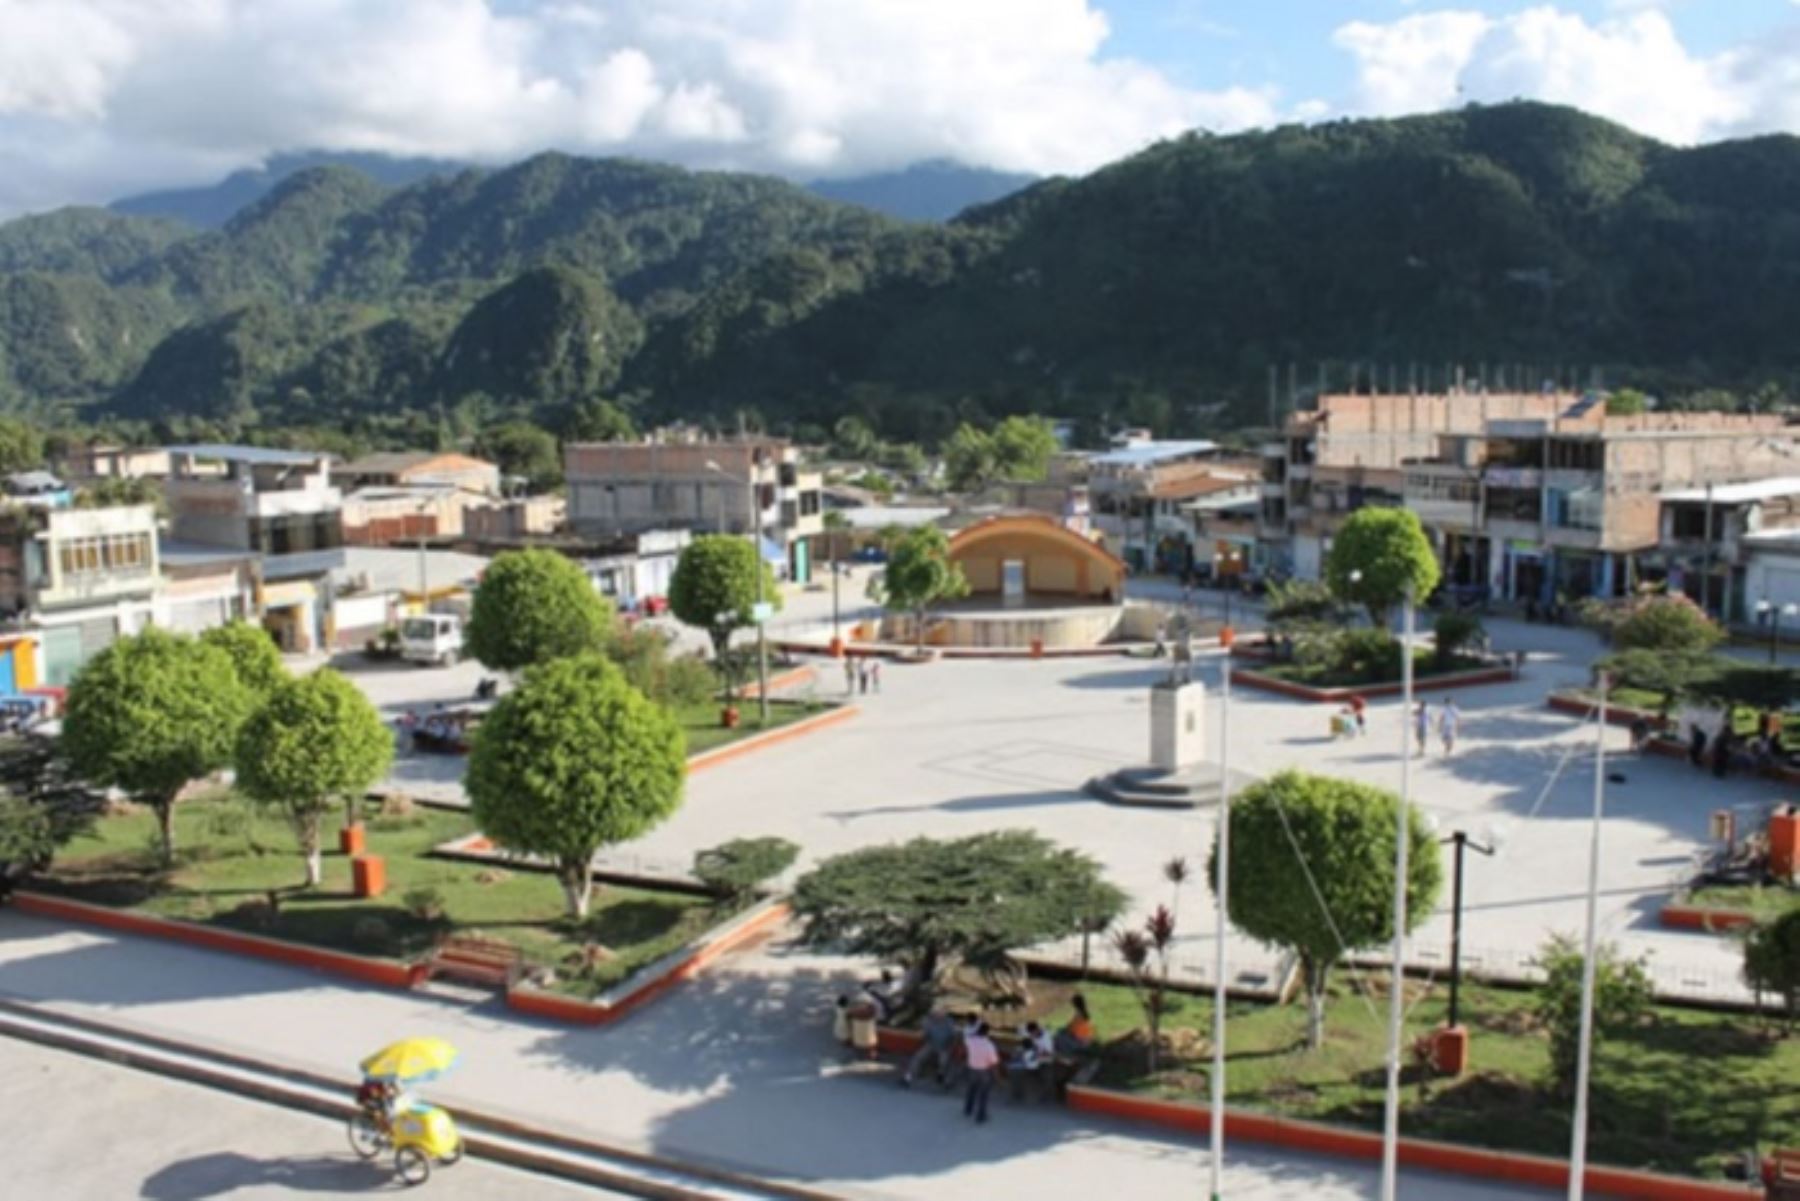 No se han reportado daños personales ni materiales a consecuencia del sismo de magnitud 4.7 que se registró esta tarde a 52 kilómetros al norte de Nueva Cajamarca, en la provincia de Rioja, región San Martín, informó el Instituto Nacional de Defensa Civil (Indeci).